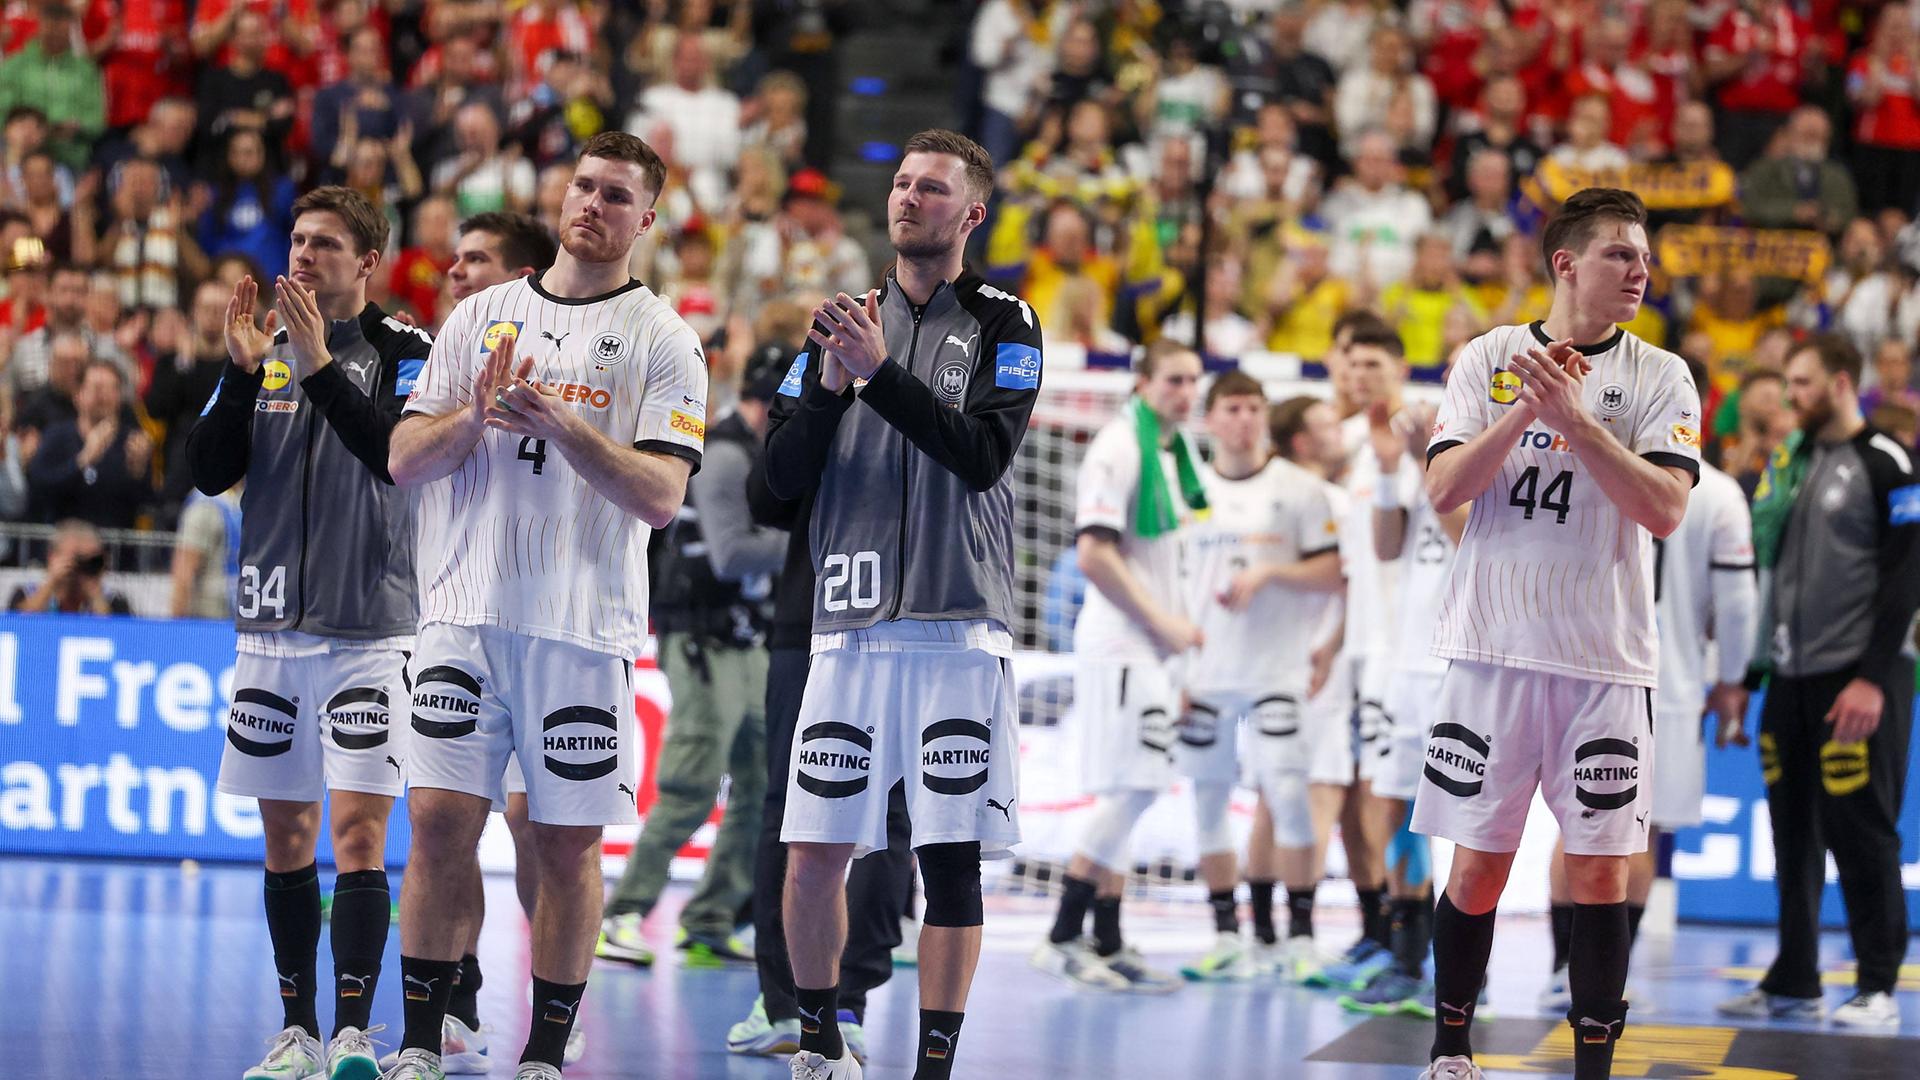 Die deutsche Handball-Nationalmannschaft verabschiedet sich von den Fans.